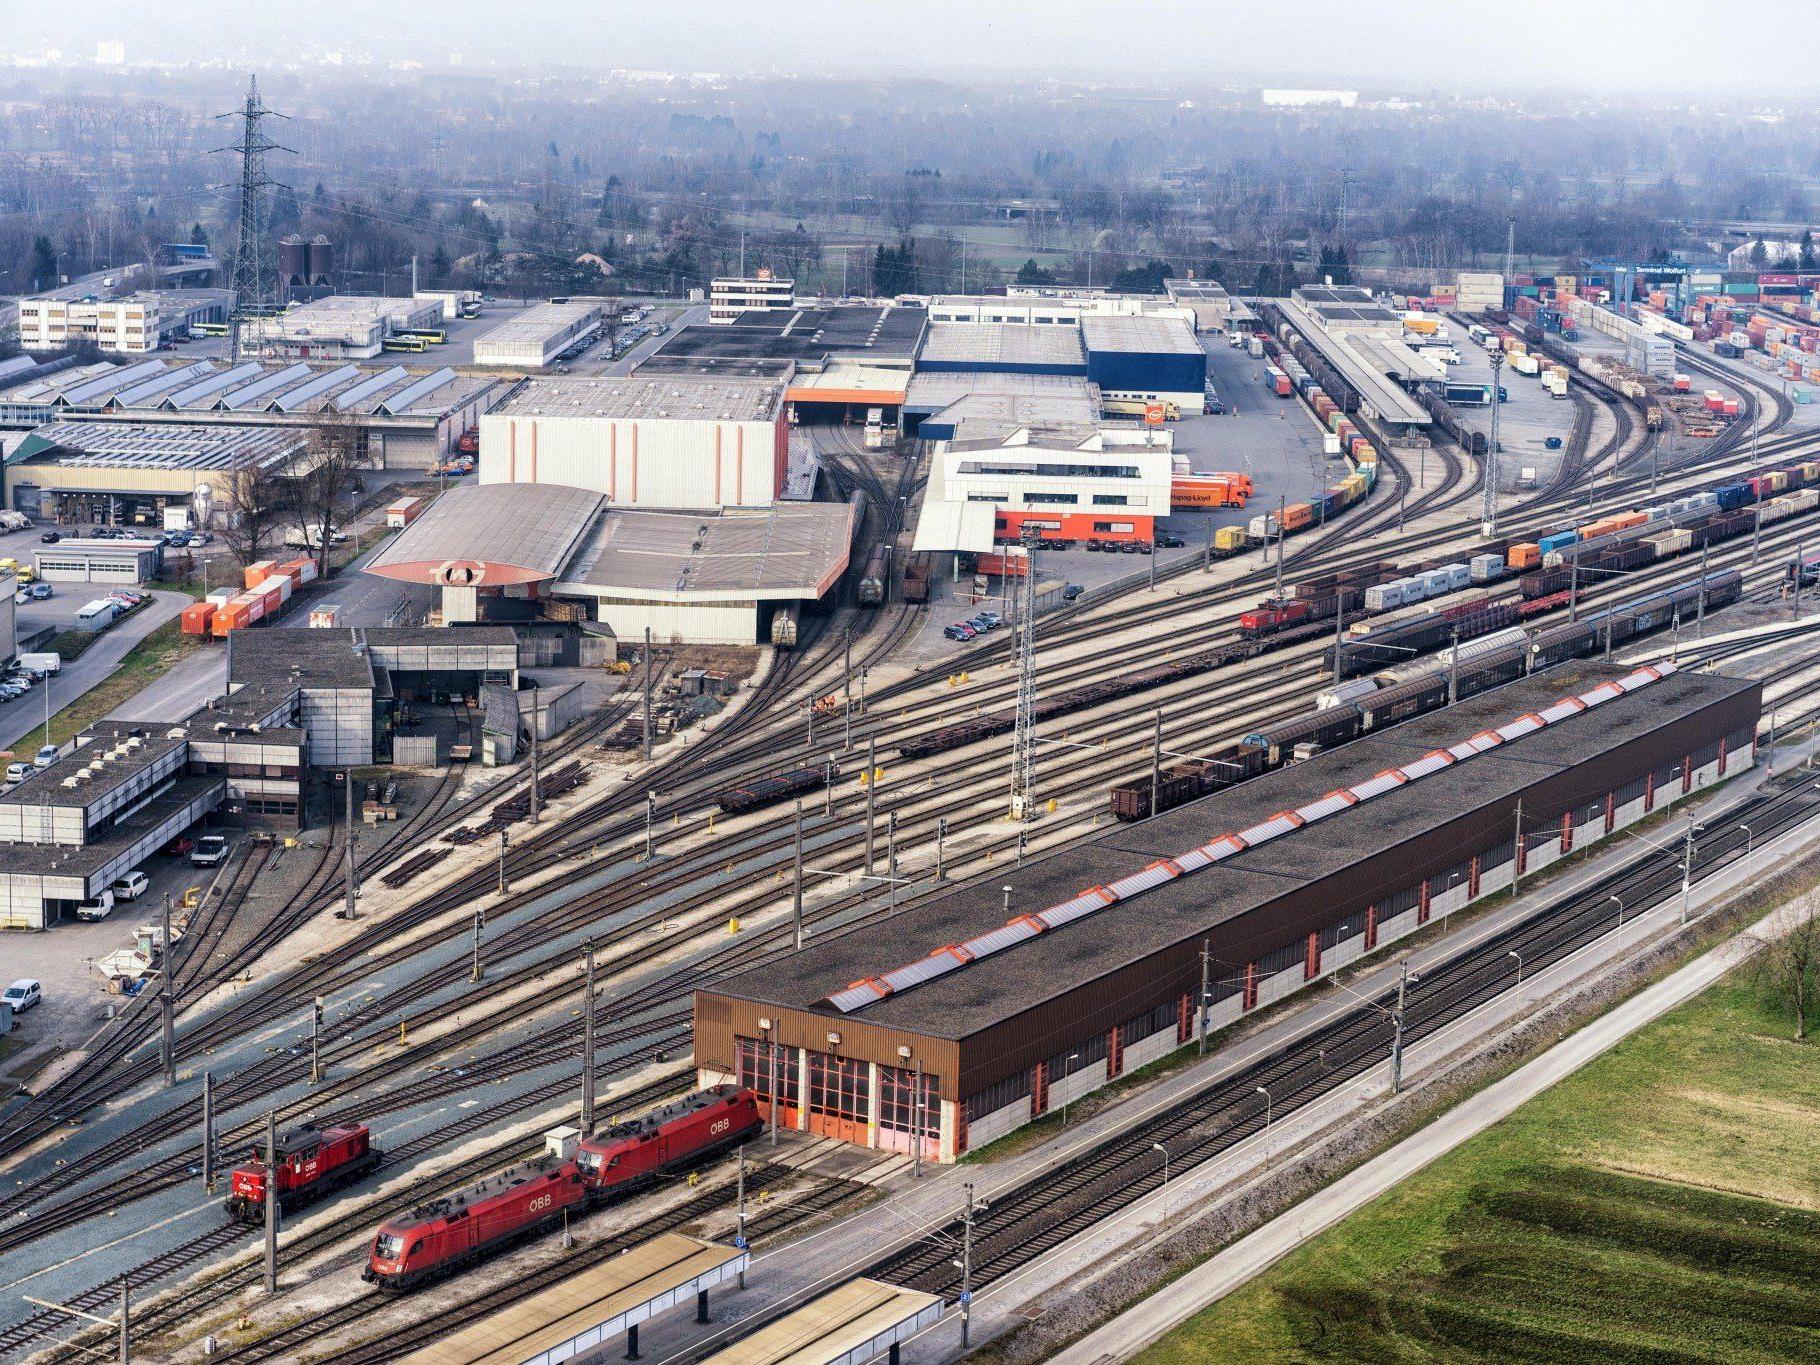 Neuer Vorarlberger Güterbahnhof Wolfurt wird größer als geplant - Terminalleistung wird verdoppelt.